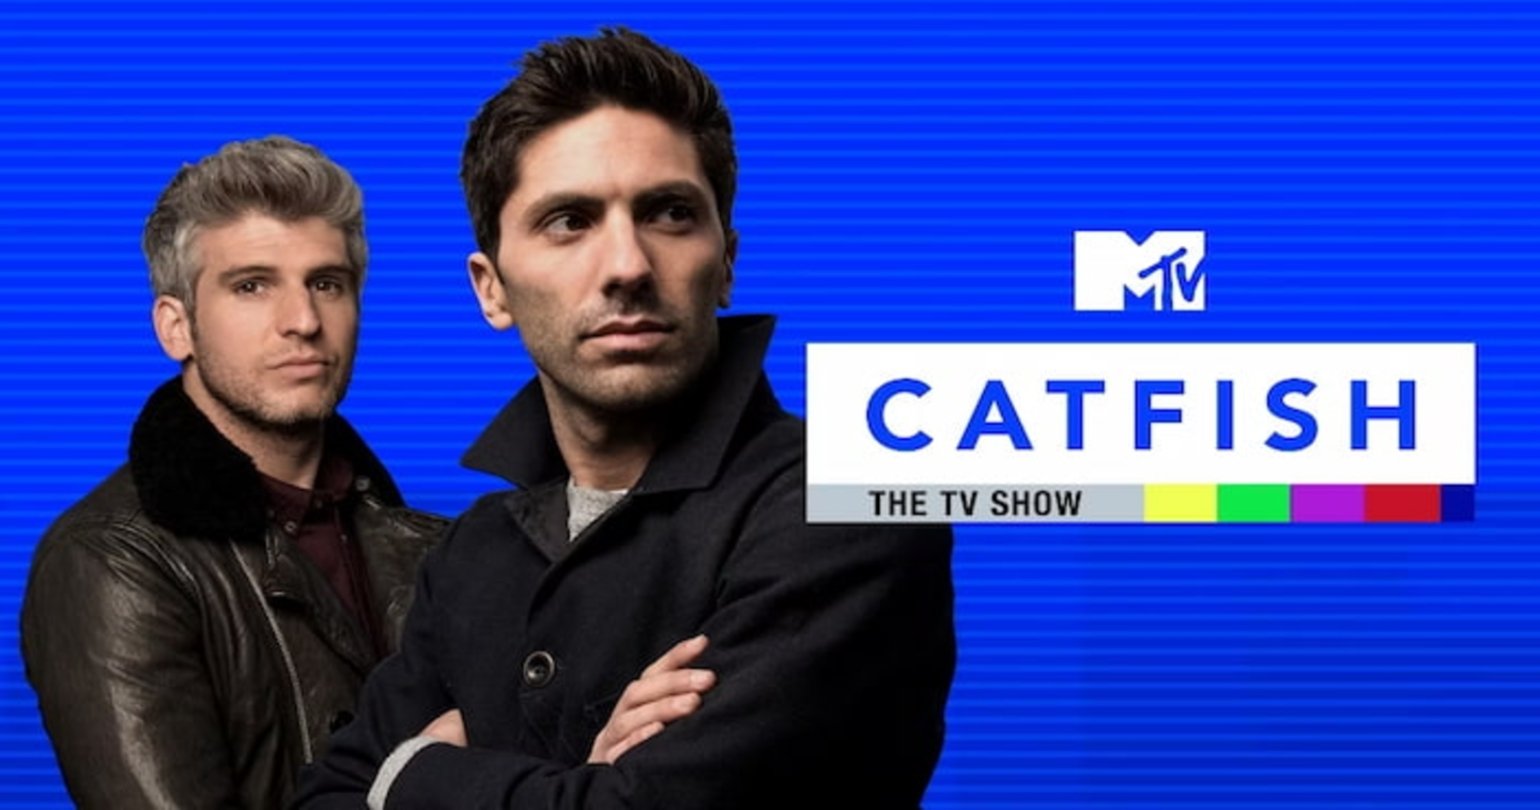 En la sección de entretenimiento de LG Channels puedes encontrar muchos programas populares, como Catfish de MTV